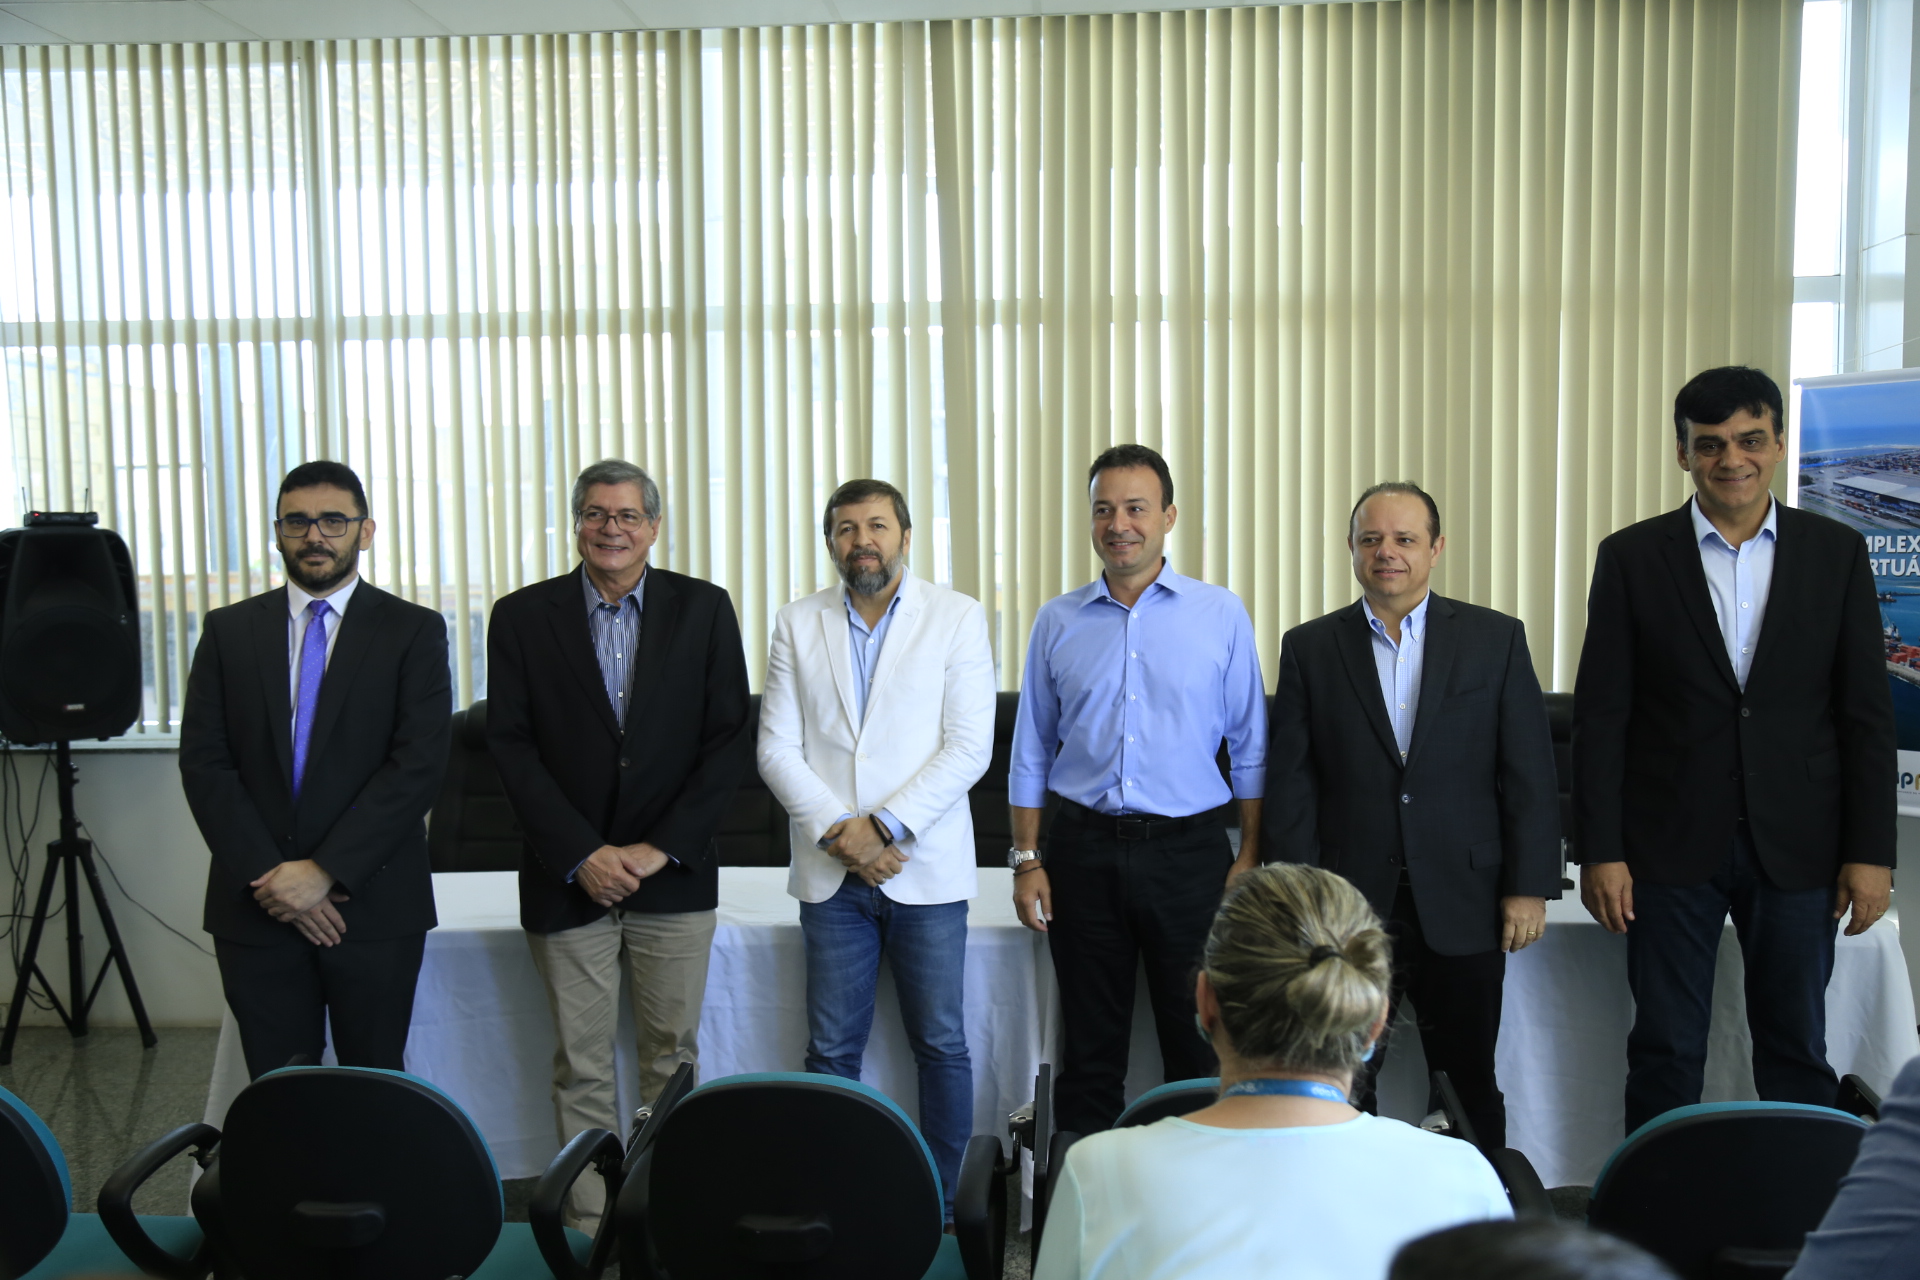 ZPE Ceará celebra 6° ano de operação com anúncio de expansão